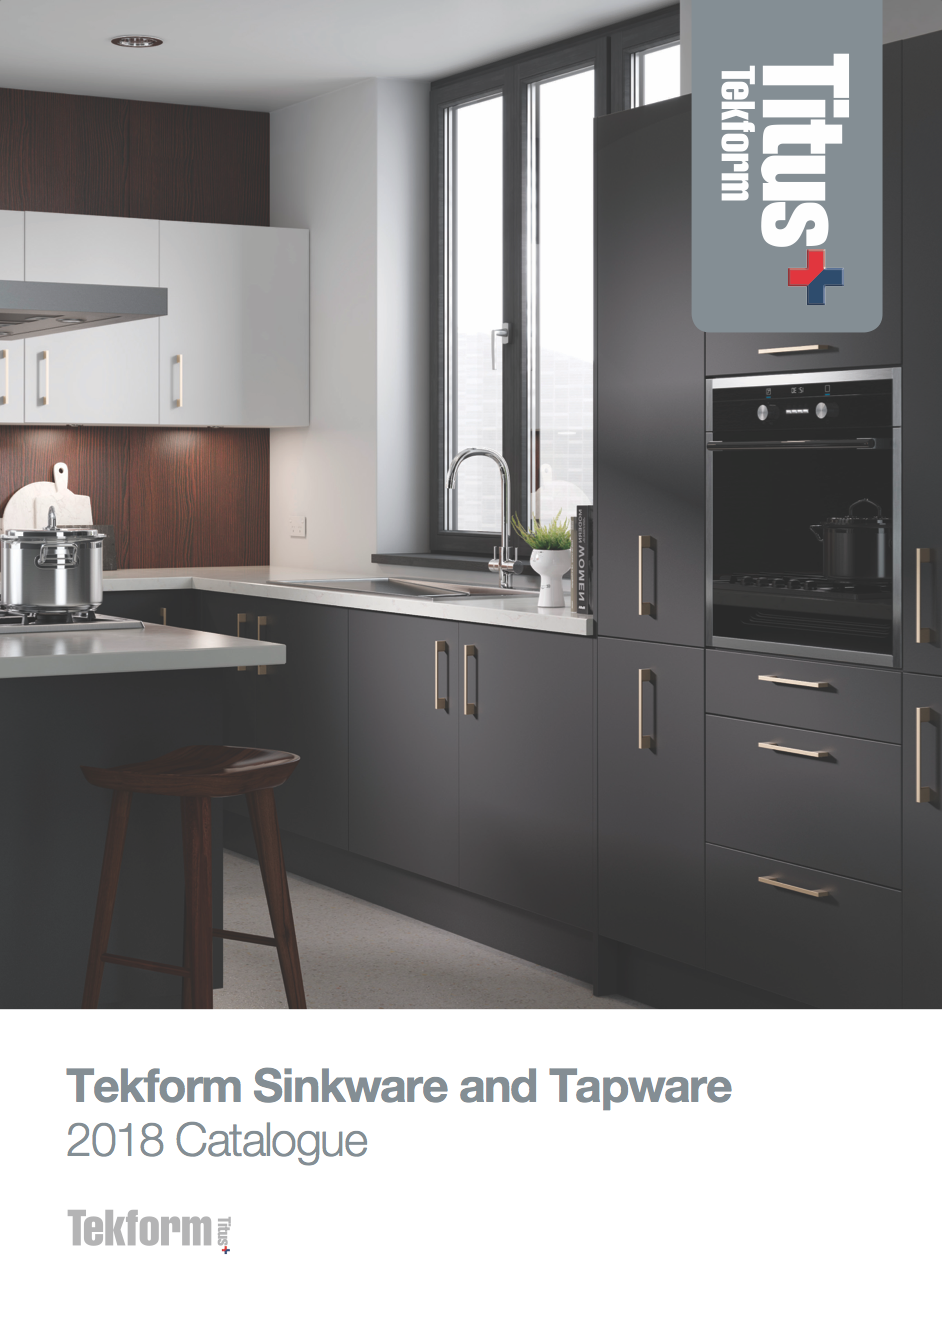 Sinkware and Tapware Brochure 2018